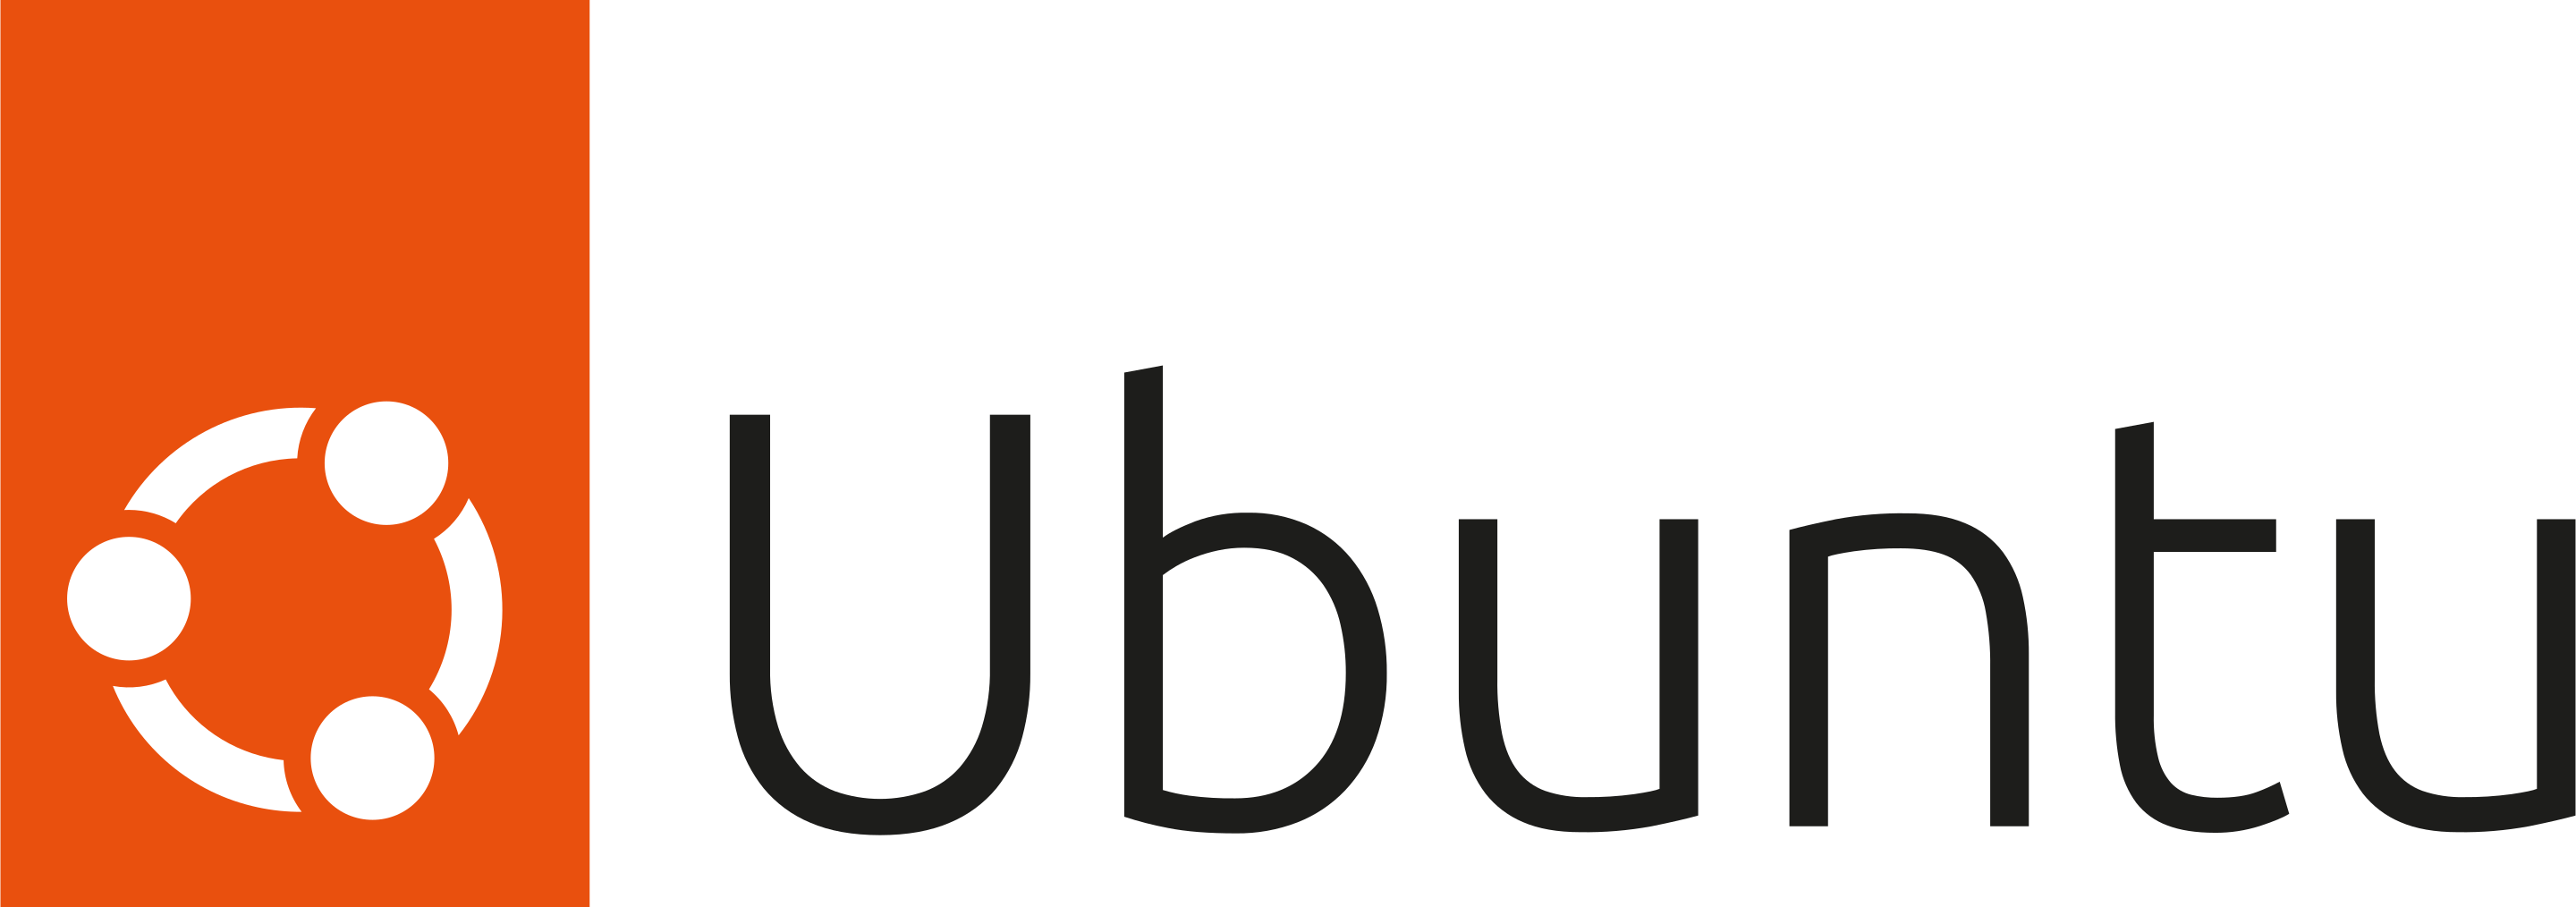 Linux - Debian GNU - Ubuntu Foundation